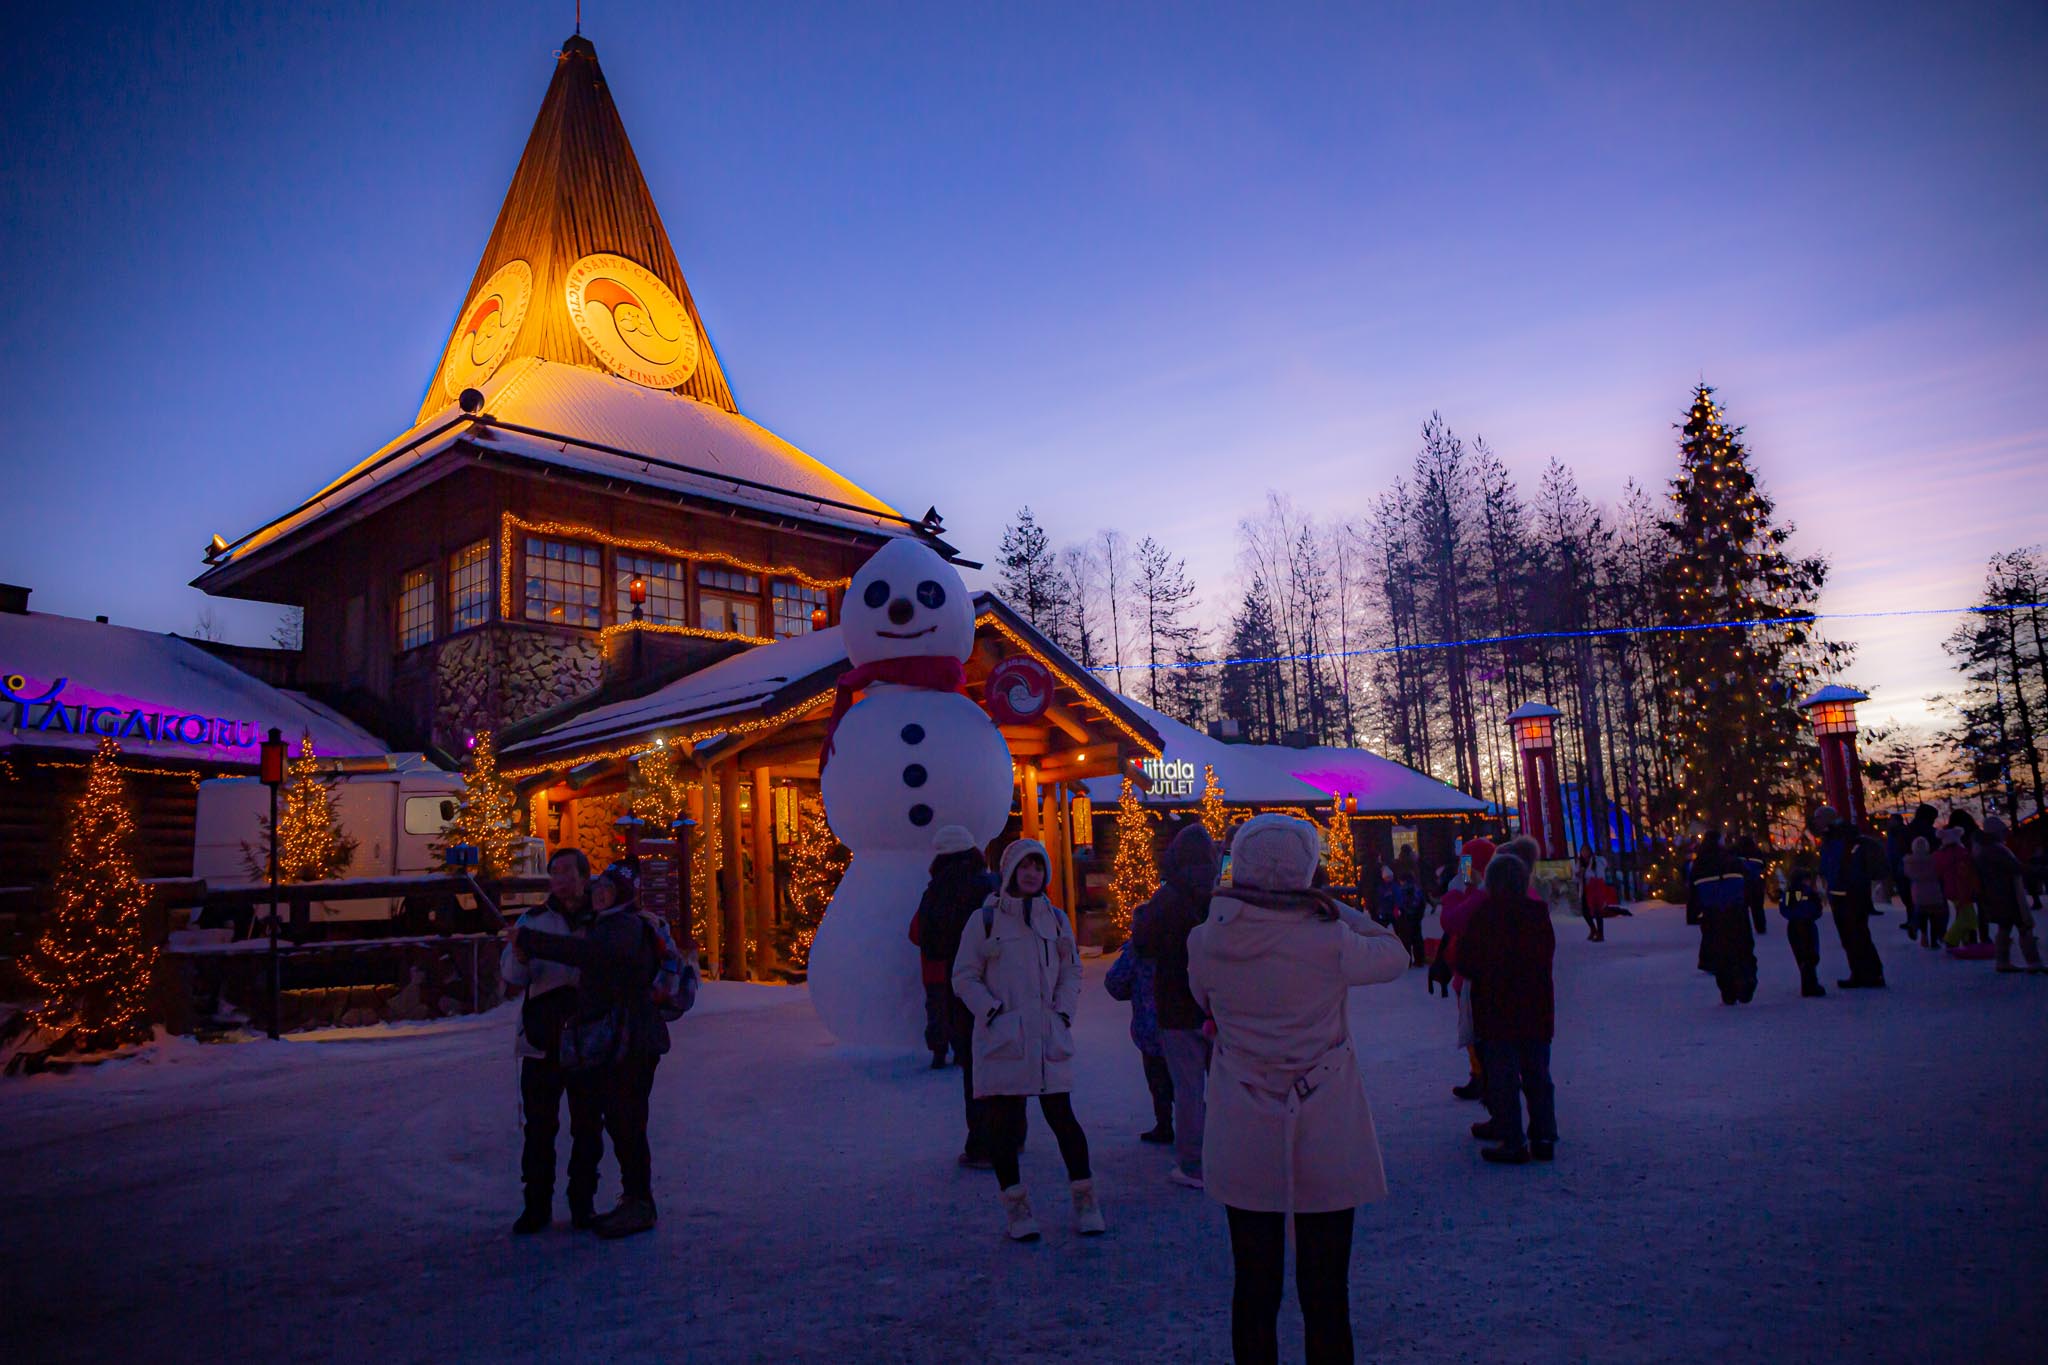 Christmas mood in Santa Claus Village - Finland- Rovaniemi Finland - Visit Lapland Pic- Jasim Sarker